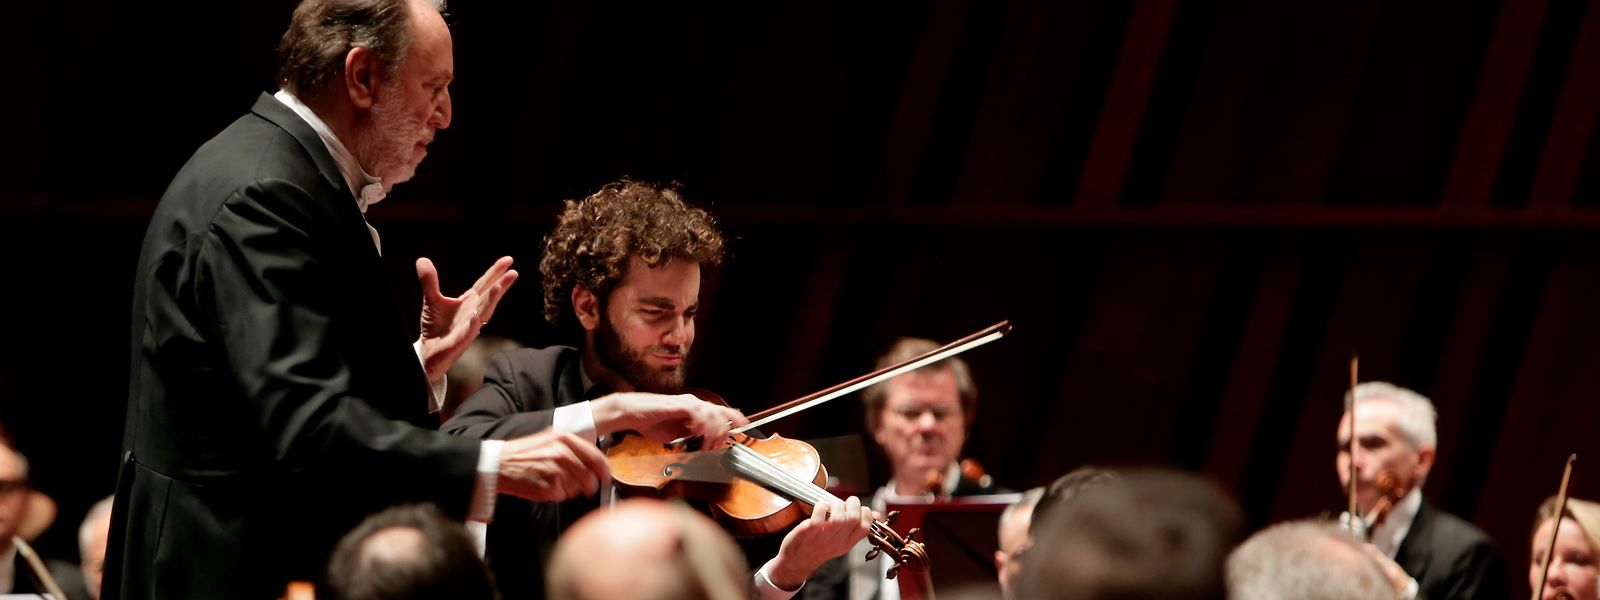 Le Filarmonica della Scala et son direc­teur musical Riccardo Chailly, accom­pagnés du violoniste Emmanuel Tjeknavorian, lauréat du Concours Sibelius 2015.